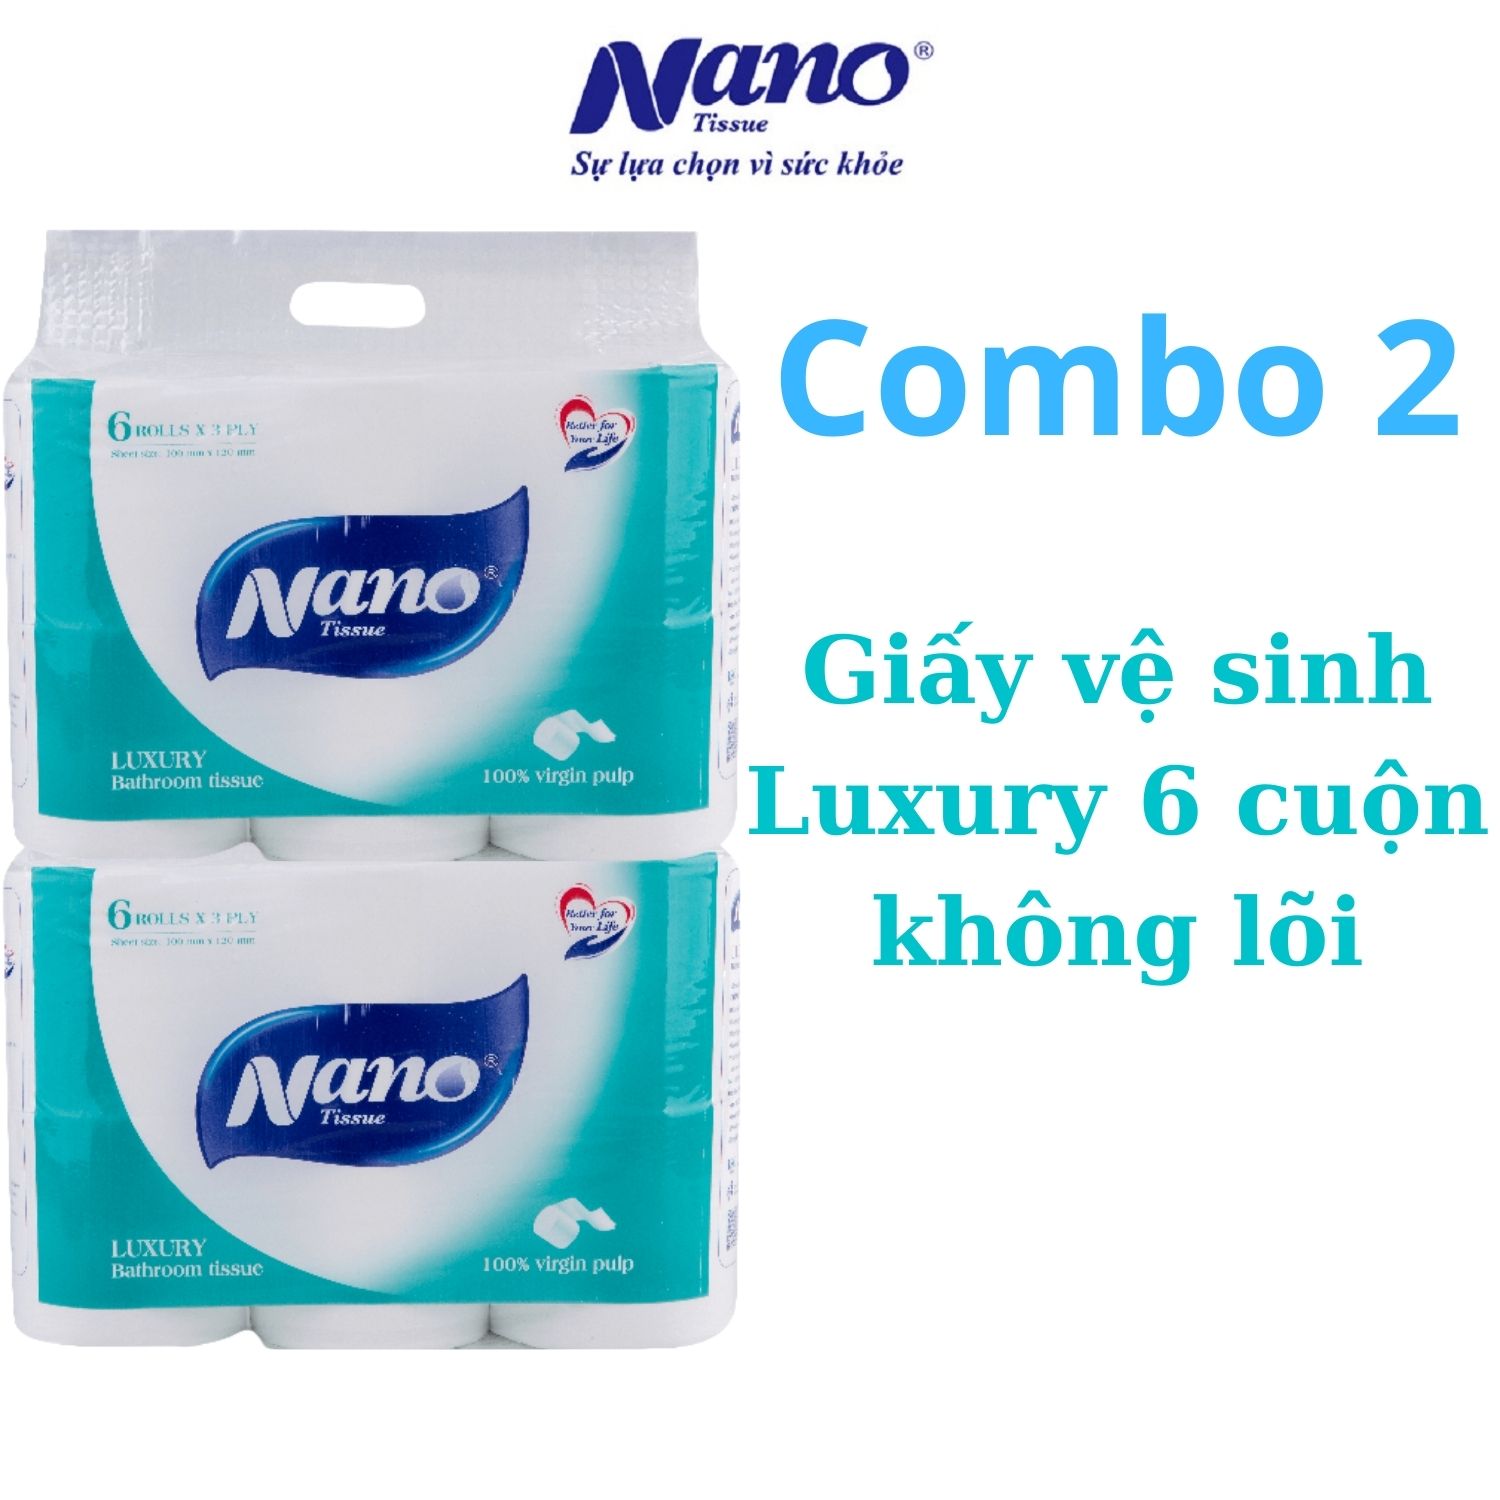 Combo 2 lốc giấy vệ sinh Luxury, lốc 6 cuộn thương hiệu Nano, có lõi và không lõi, giấy mịn, an toàn khi sử dụng